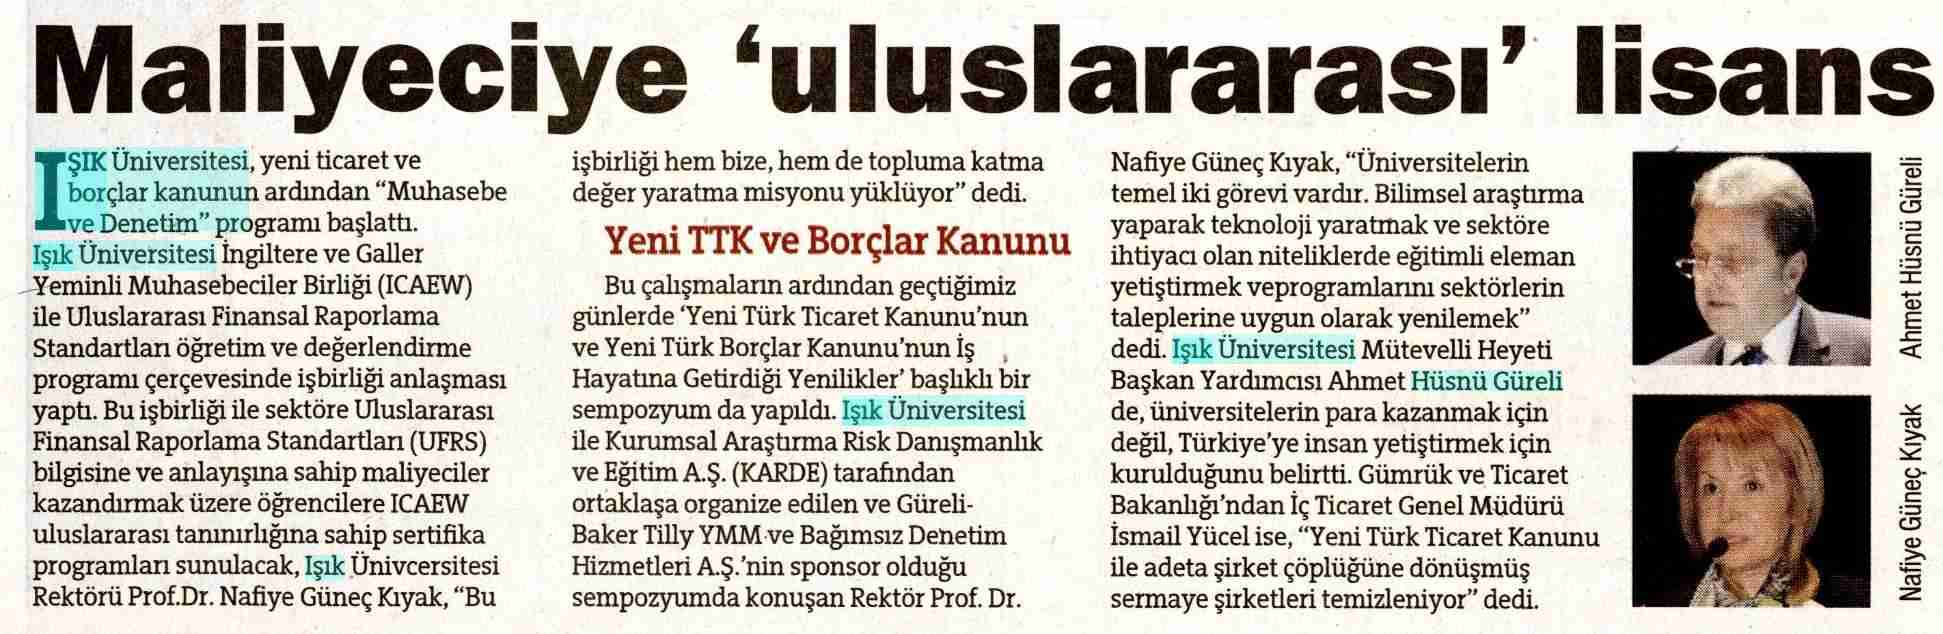 Hürriyet Gazetesi - 13.10.2012